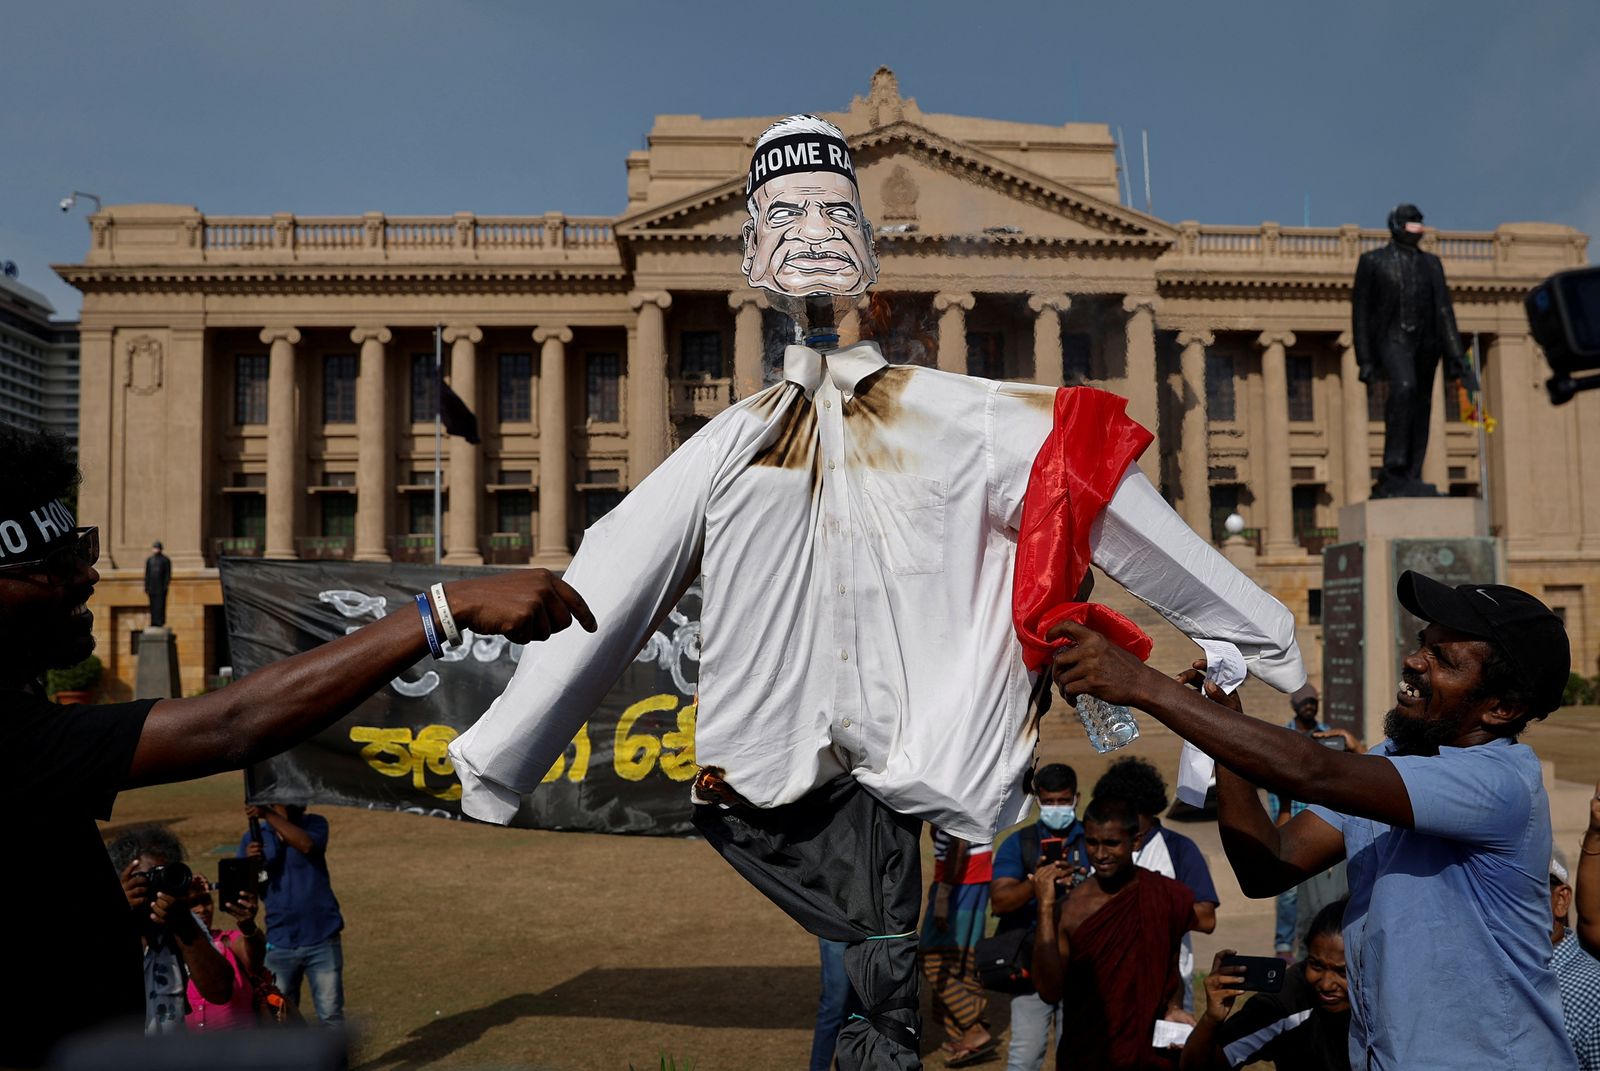 متظاهرون يحرقون دمية تمثل الرئيس السريلانكي الجديد رانيل ويكرميسينجه خلال احتجاج في كولومبو - 19 يوليو 2022 - REUTERS